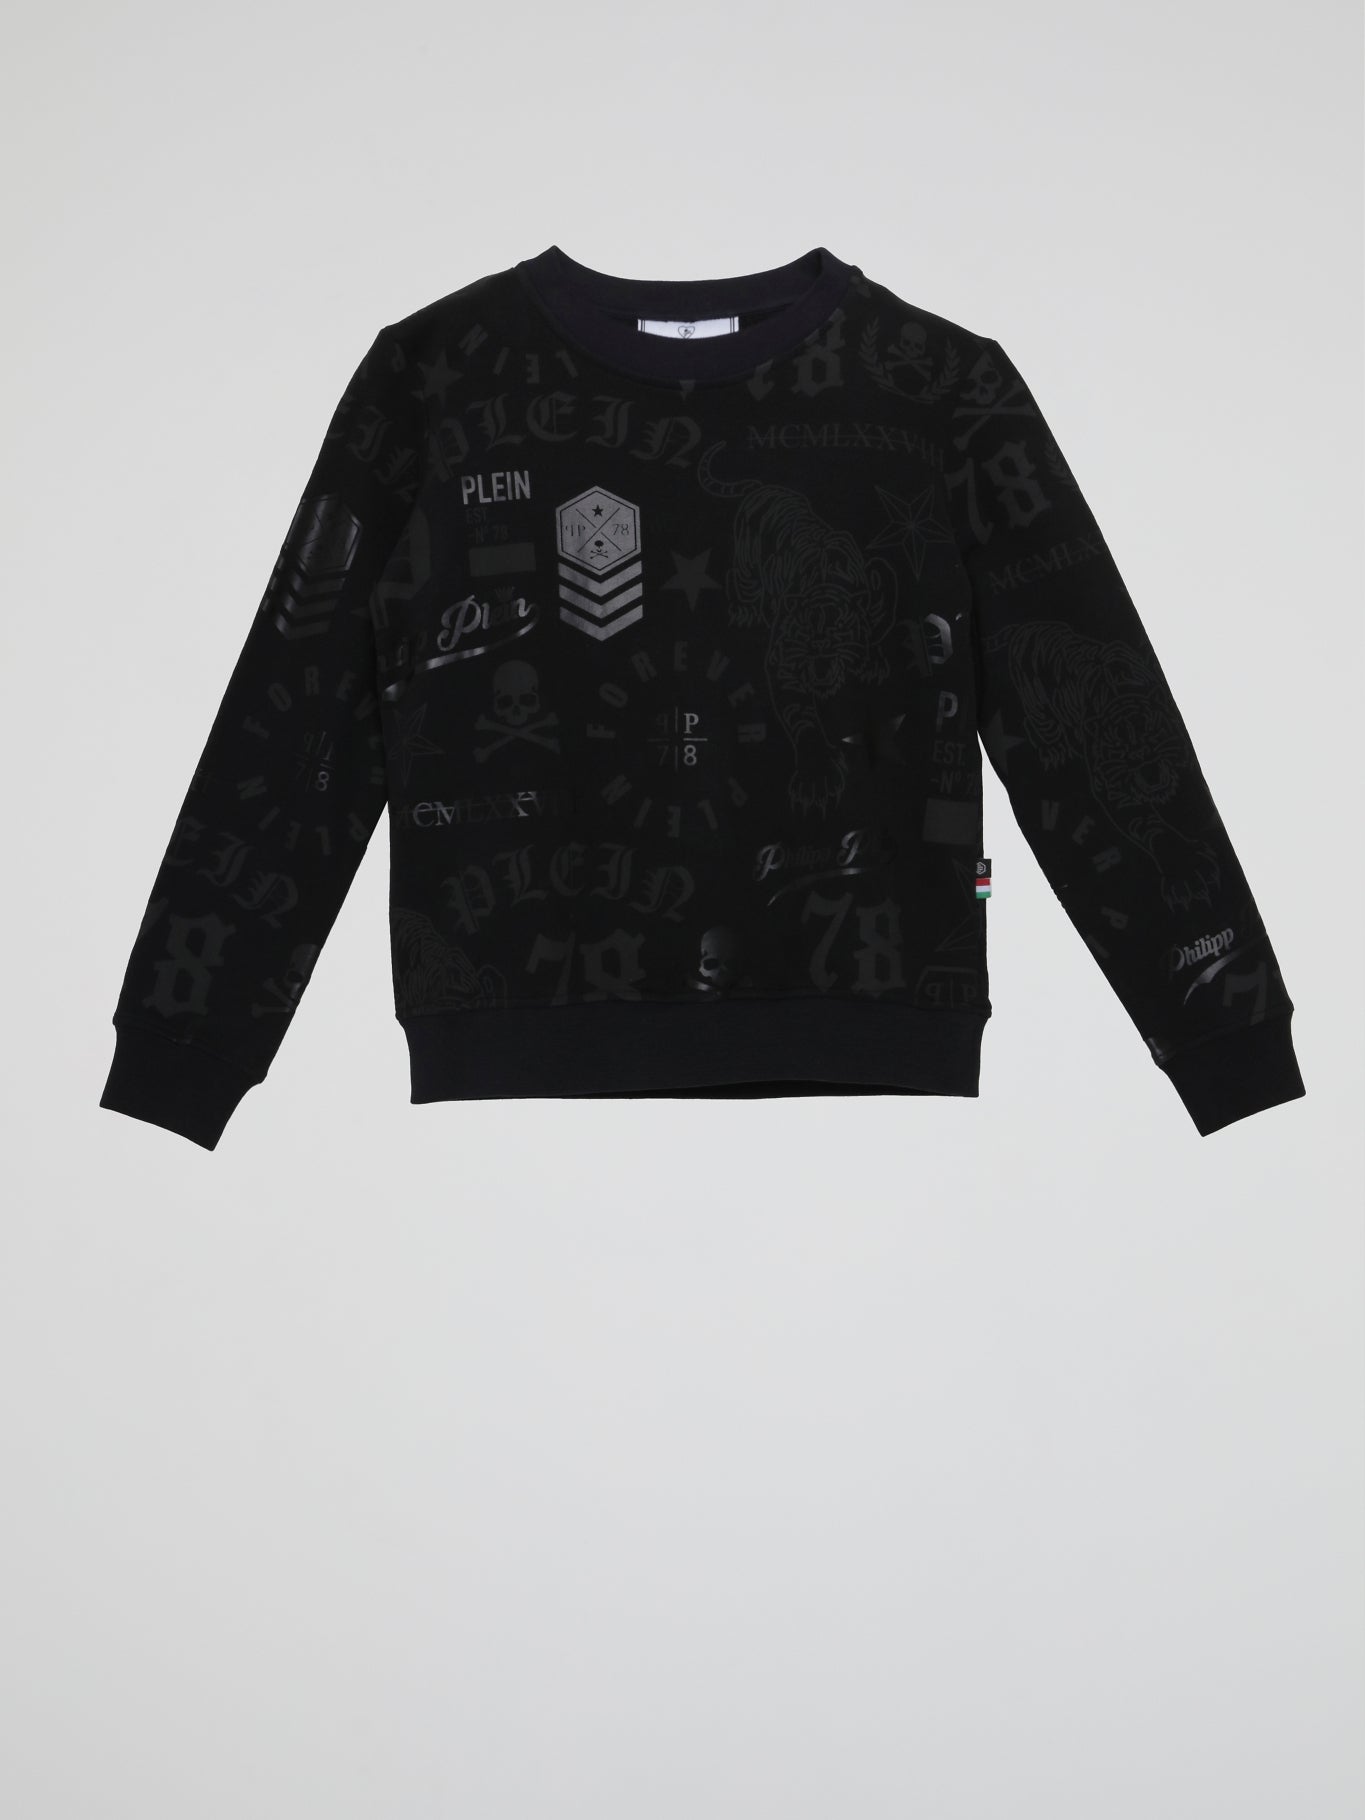 Black Printed Sweatshirt (Kids)